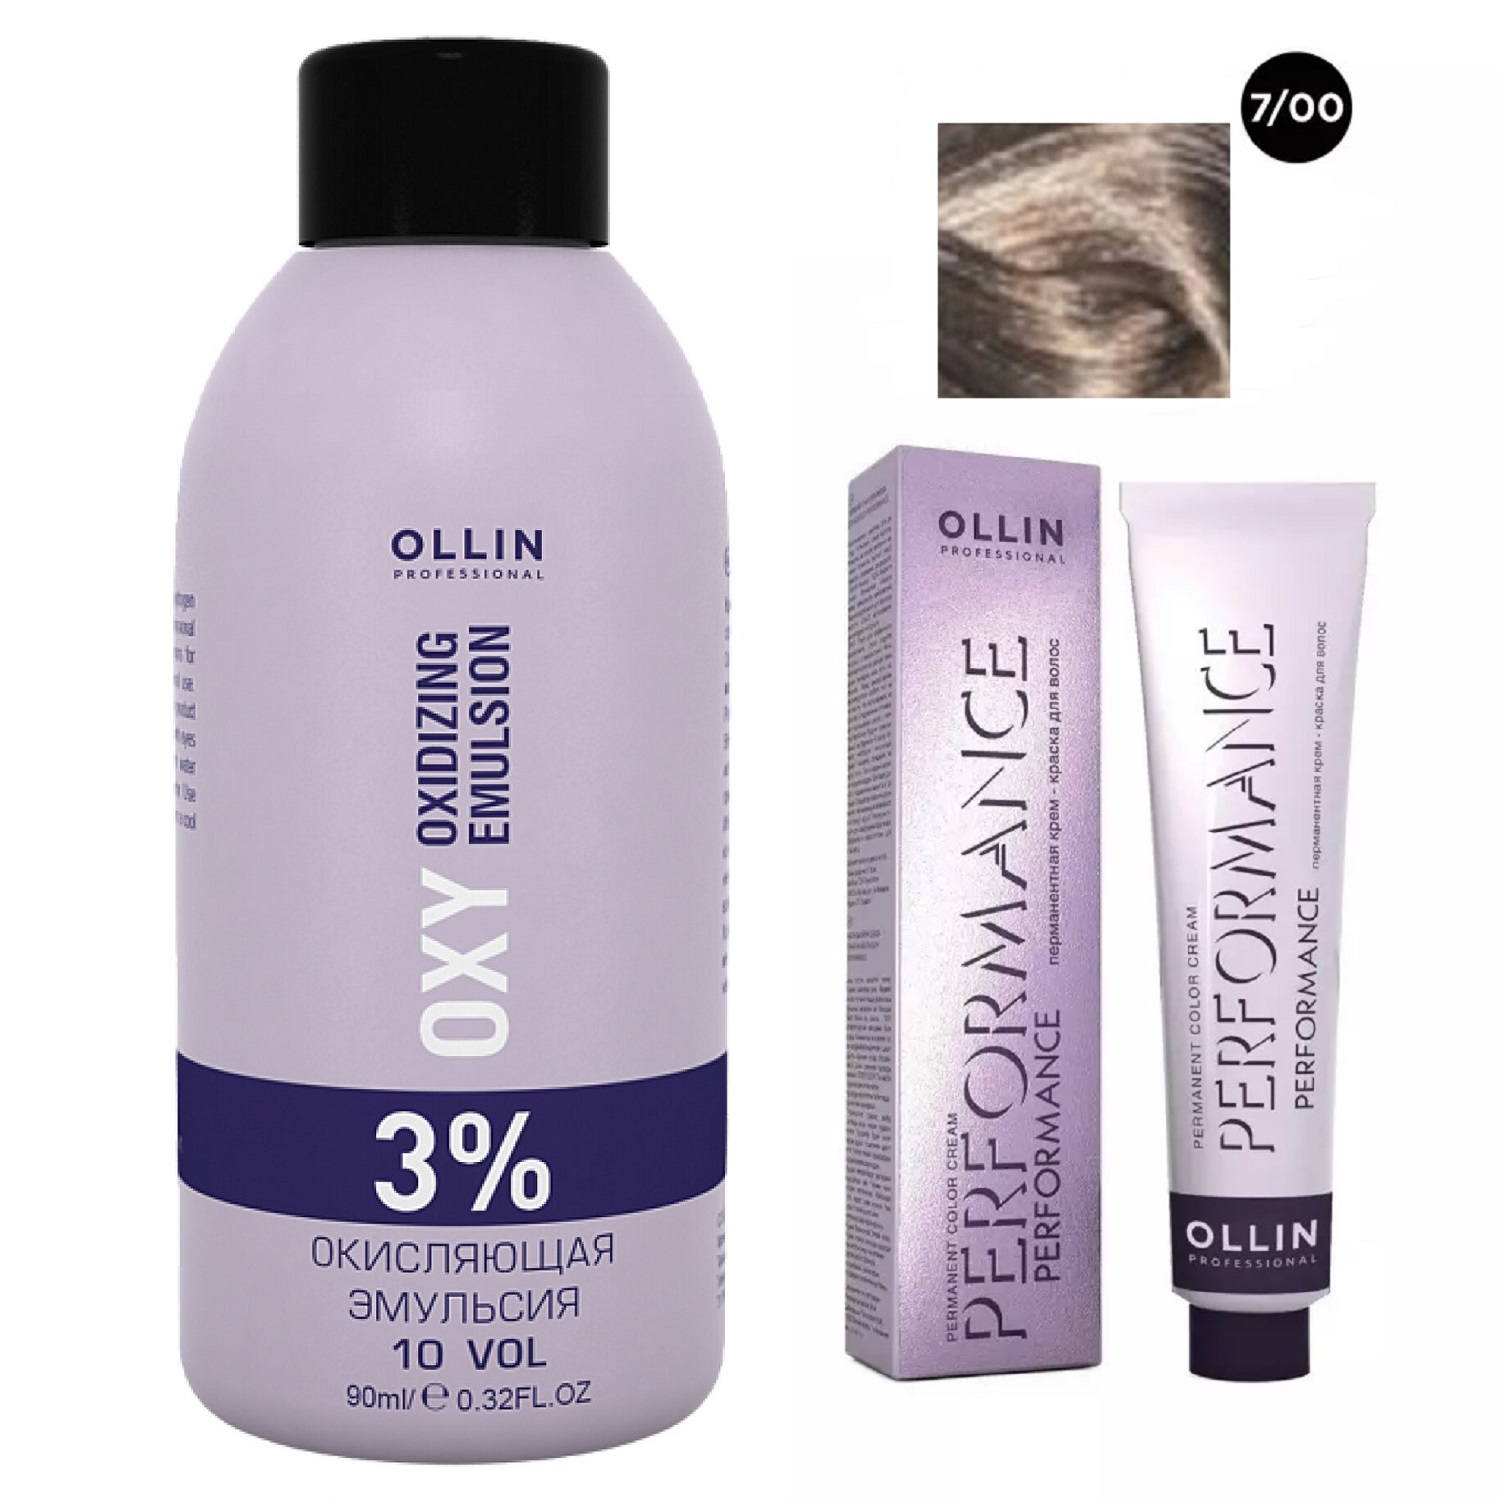 Выгодные наборы  Pharmacosmetica Ollin Professional Набор Перманентная крем-краска для волос Ollin Performance оттенок 7/00 русый глубокий 60 мл + Окисляющая эмульсия Oxy 3% 90 мл (Ollin Professional, Performance)